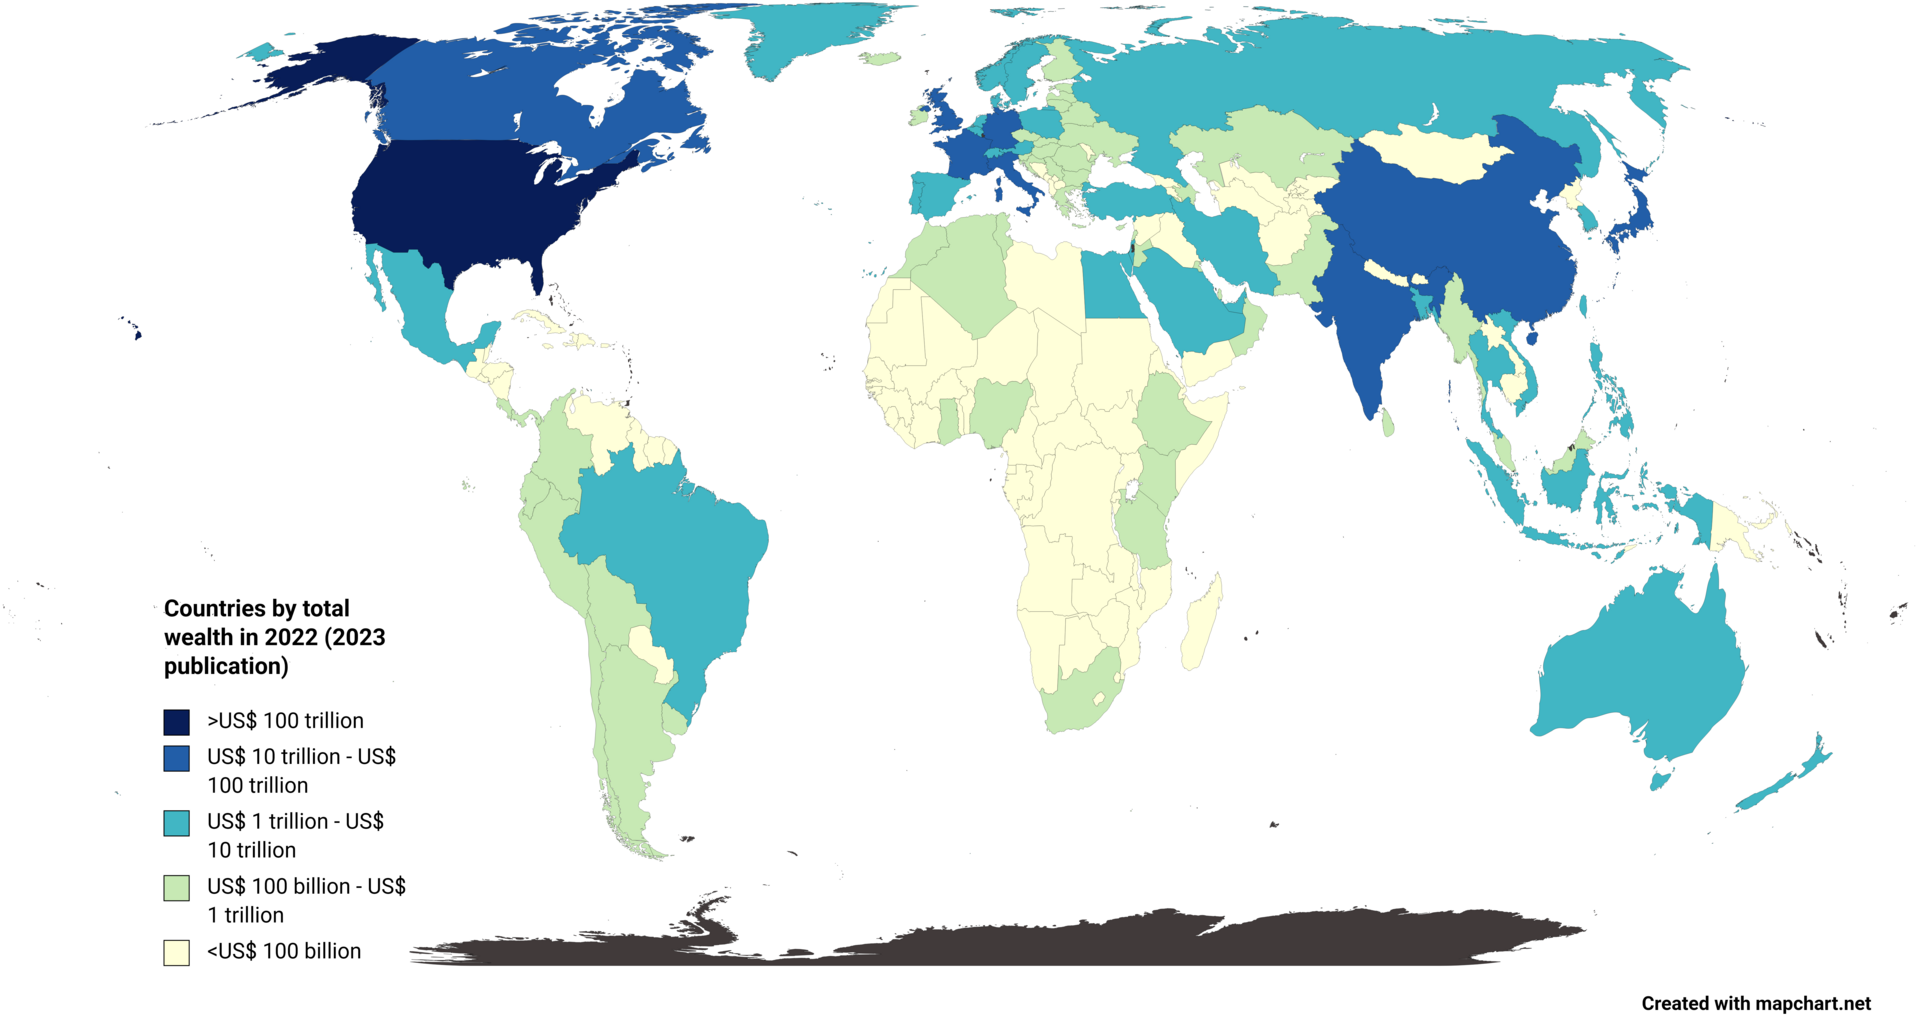 Страны по уровню национального богатства в трлн долларов
Radom1967 / wikimedia.org